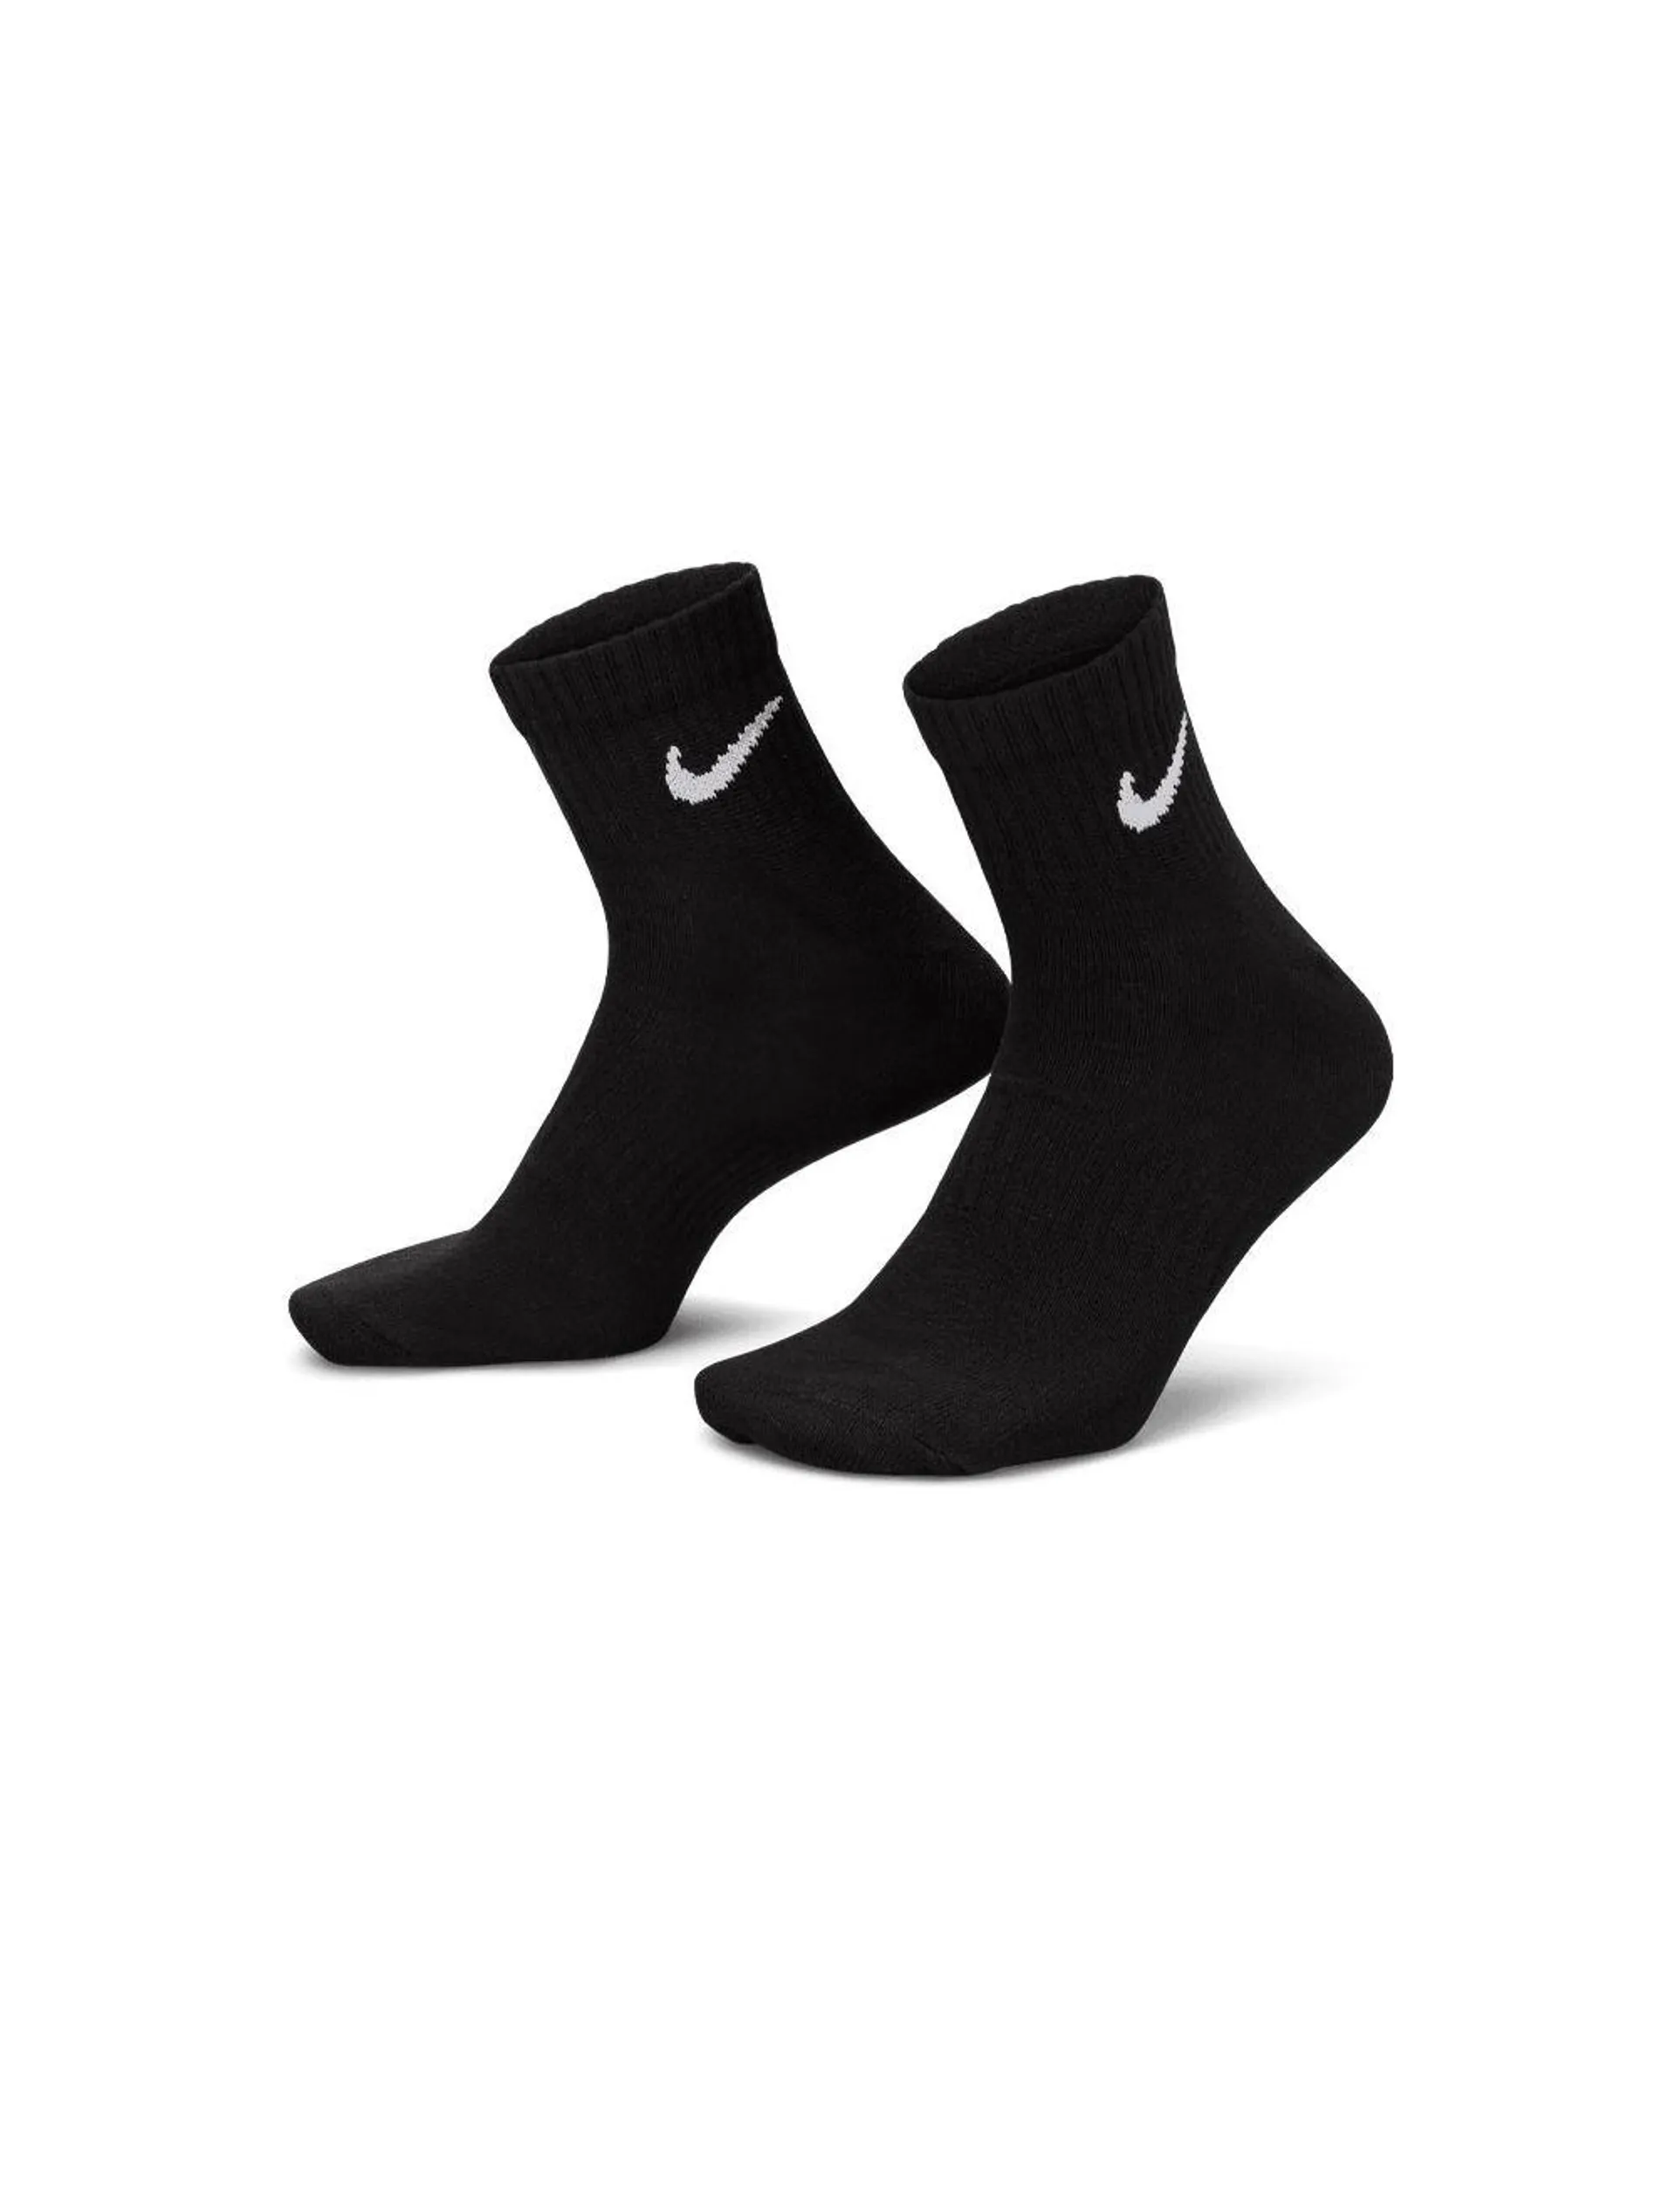 Nike Everyday Lightweight Training Ankle Socks Black White 3 Pack